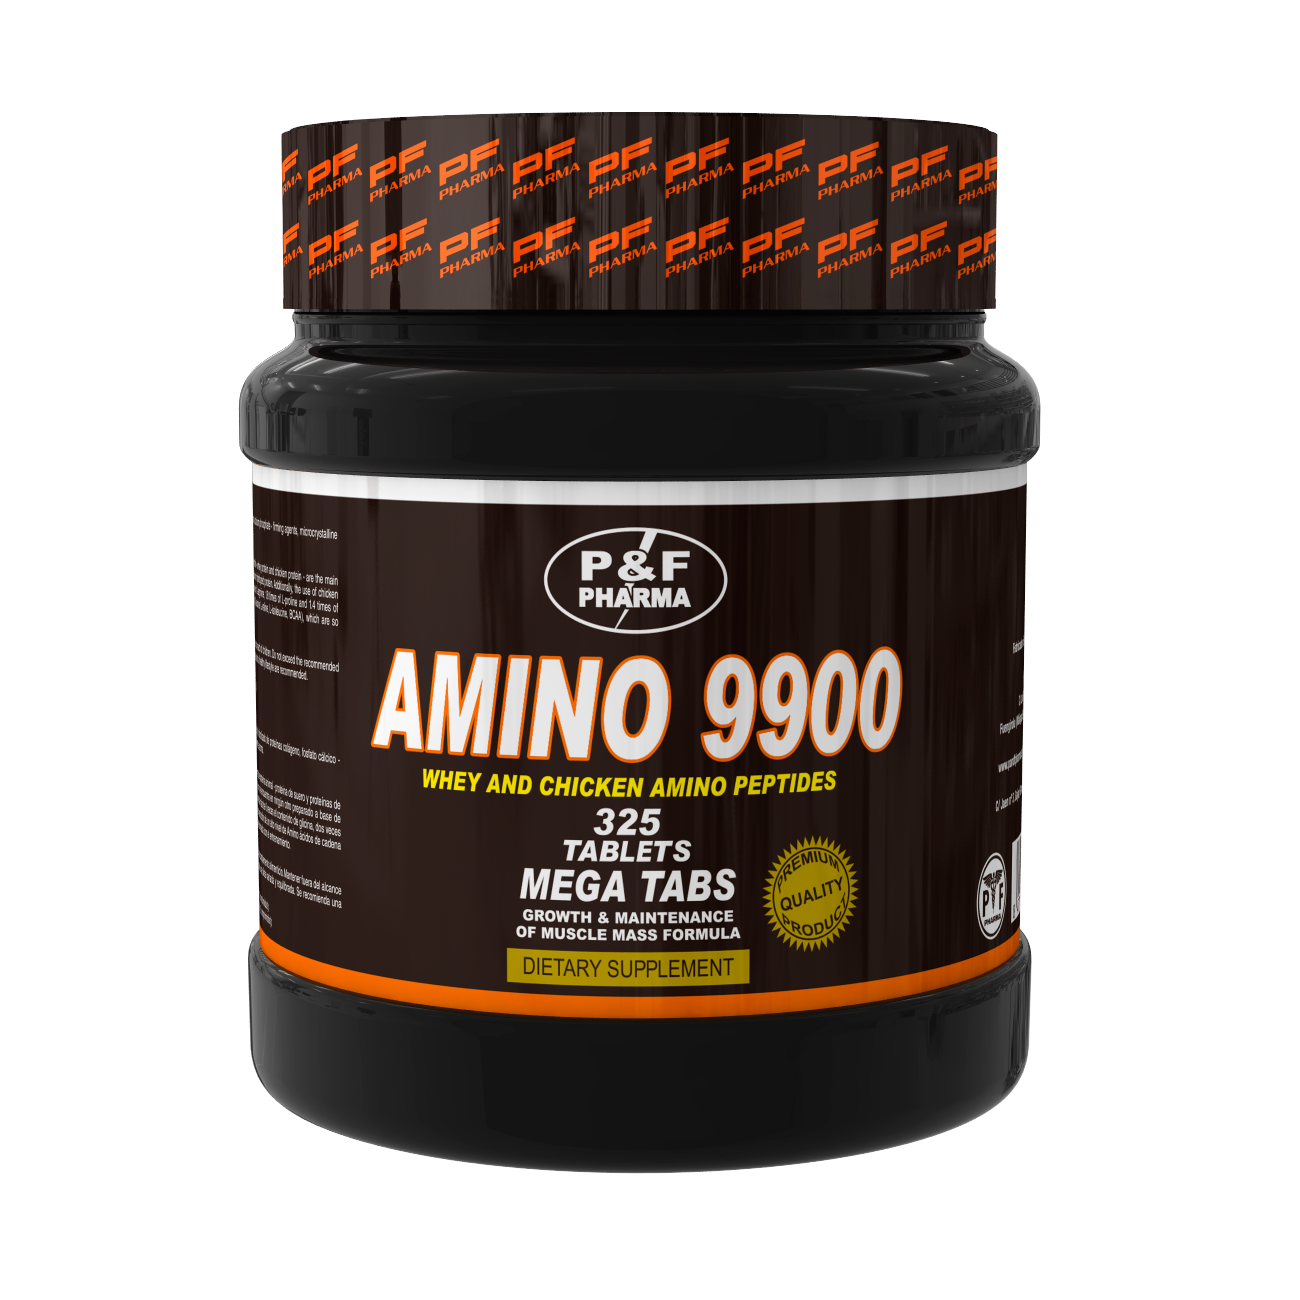 AMINO 9900